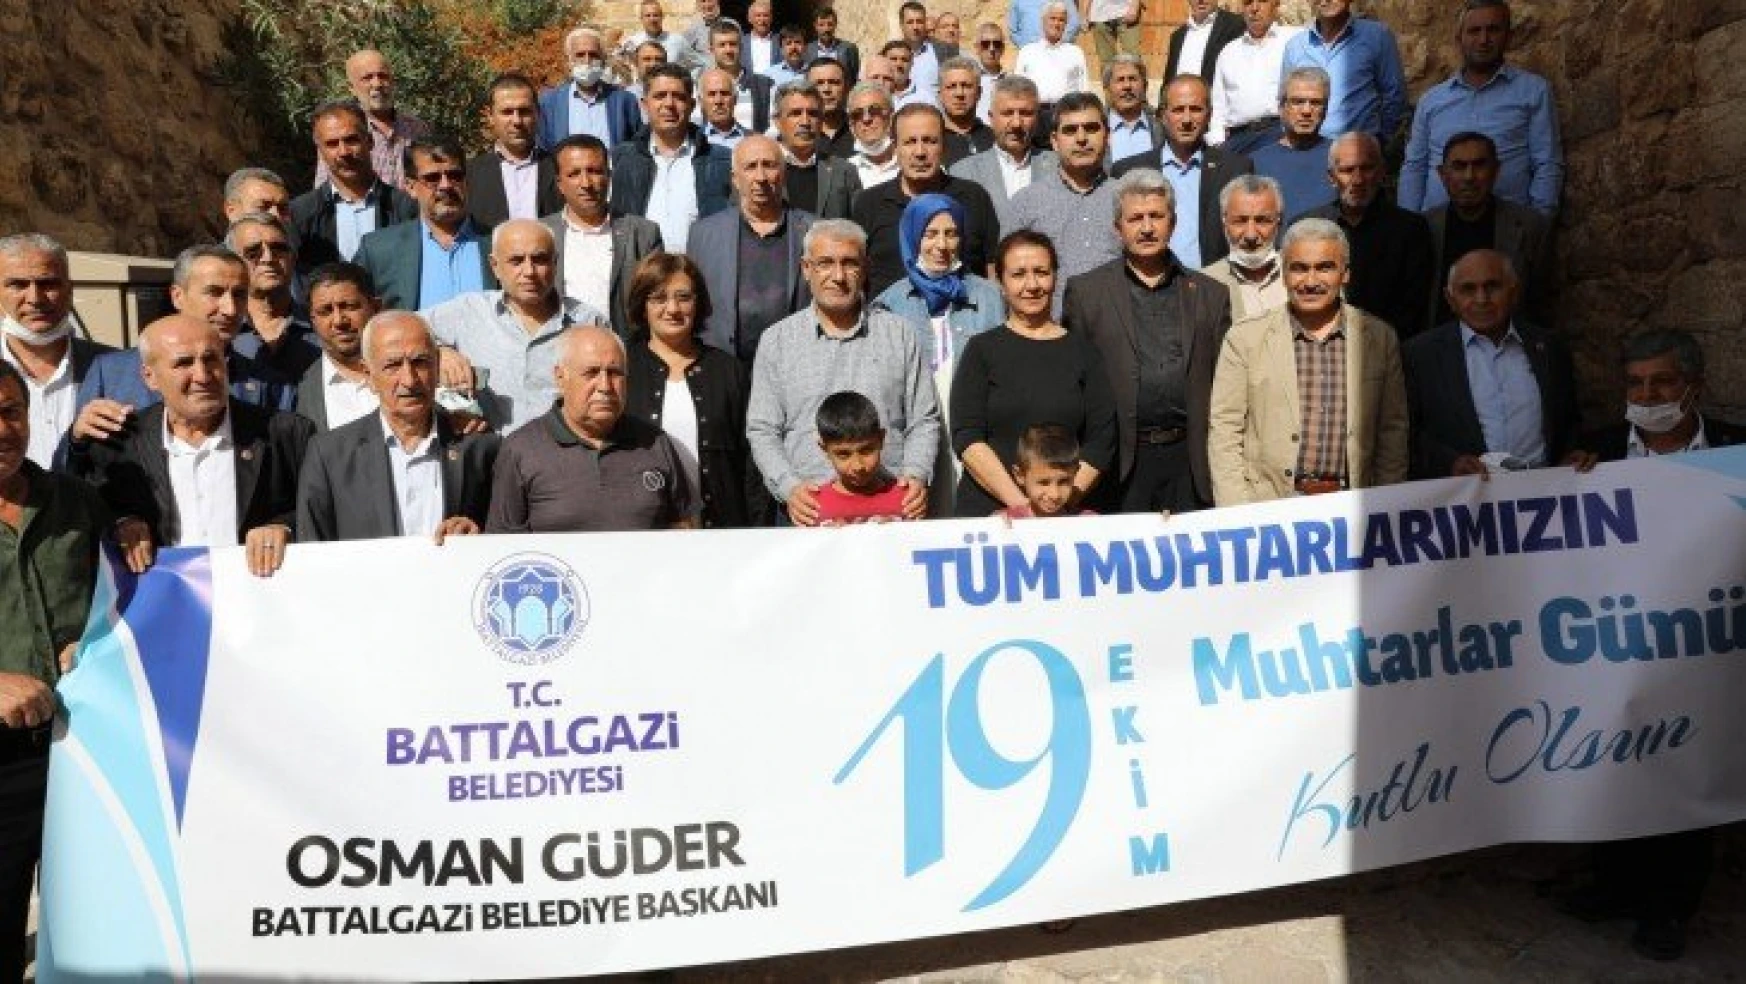 Battalgazi Belediyesi Muhtarlara Kültürel Gezi Düzenledi